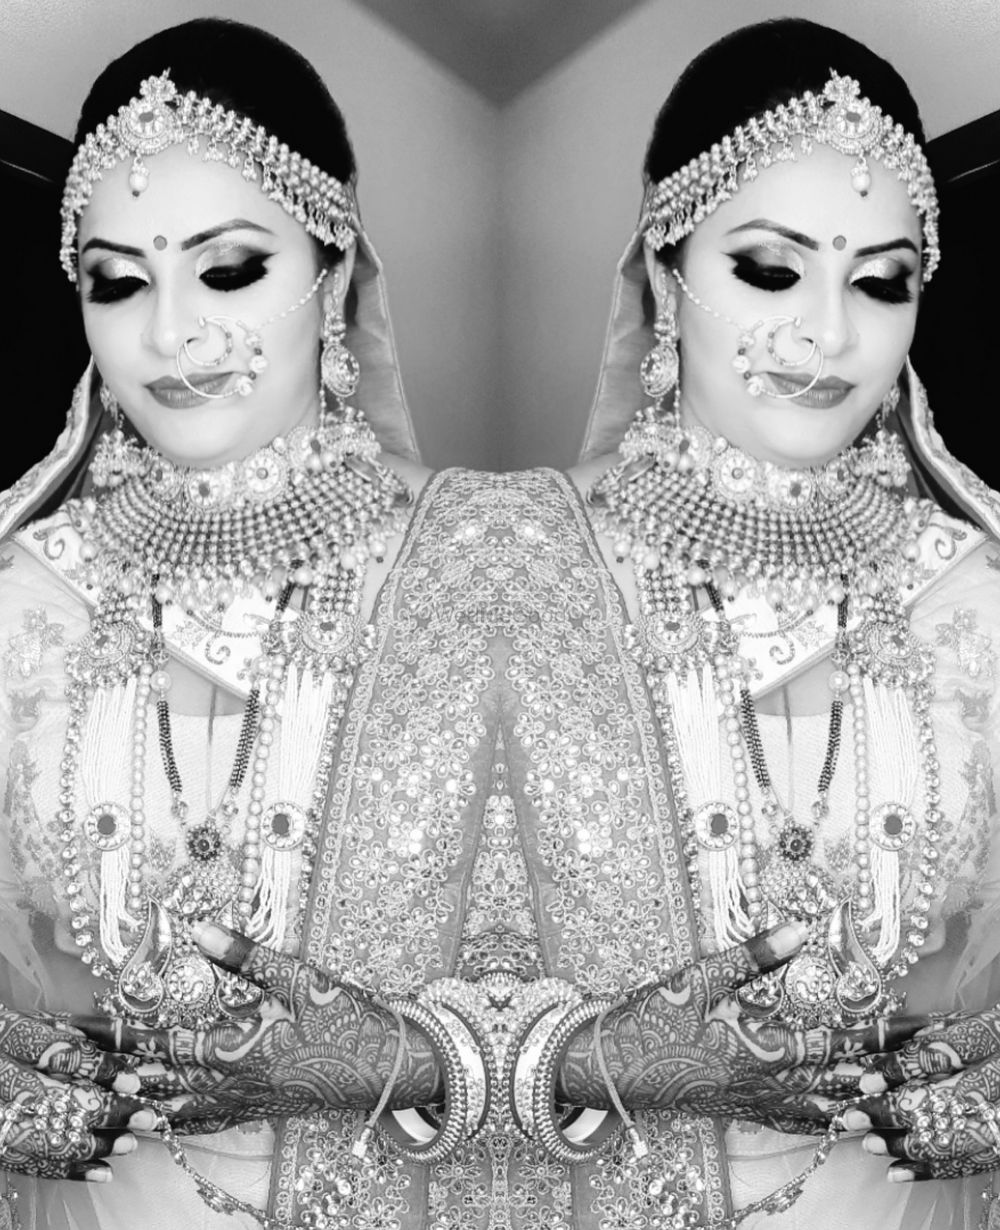 Photo From Mac makeup - By SnS Bridal Makeups : Smita & Shobha Lodha